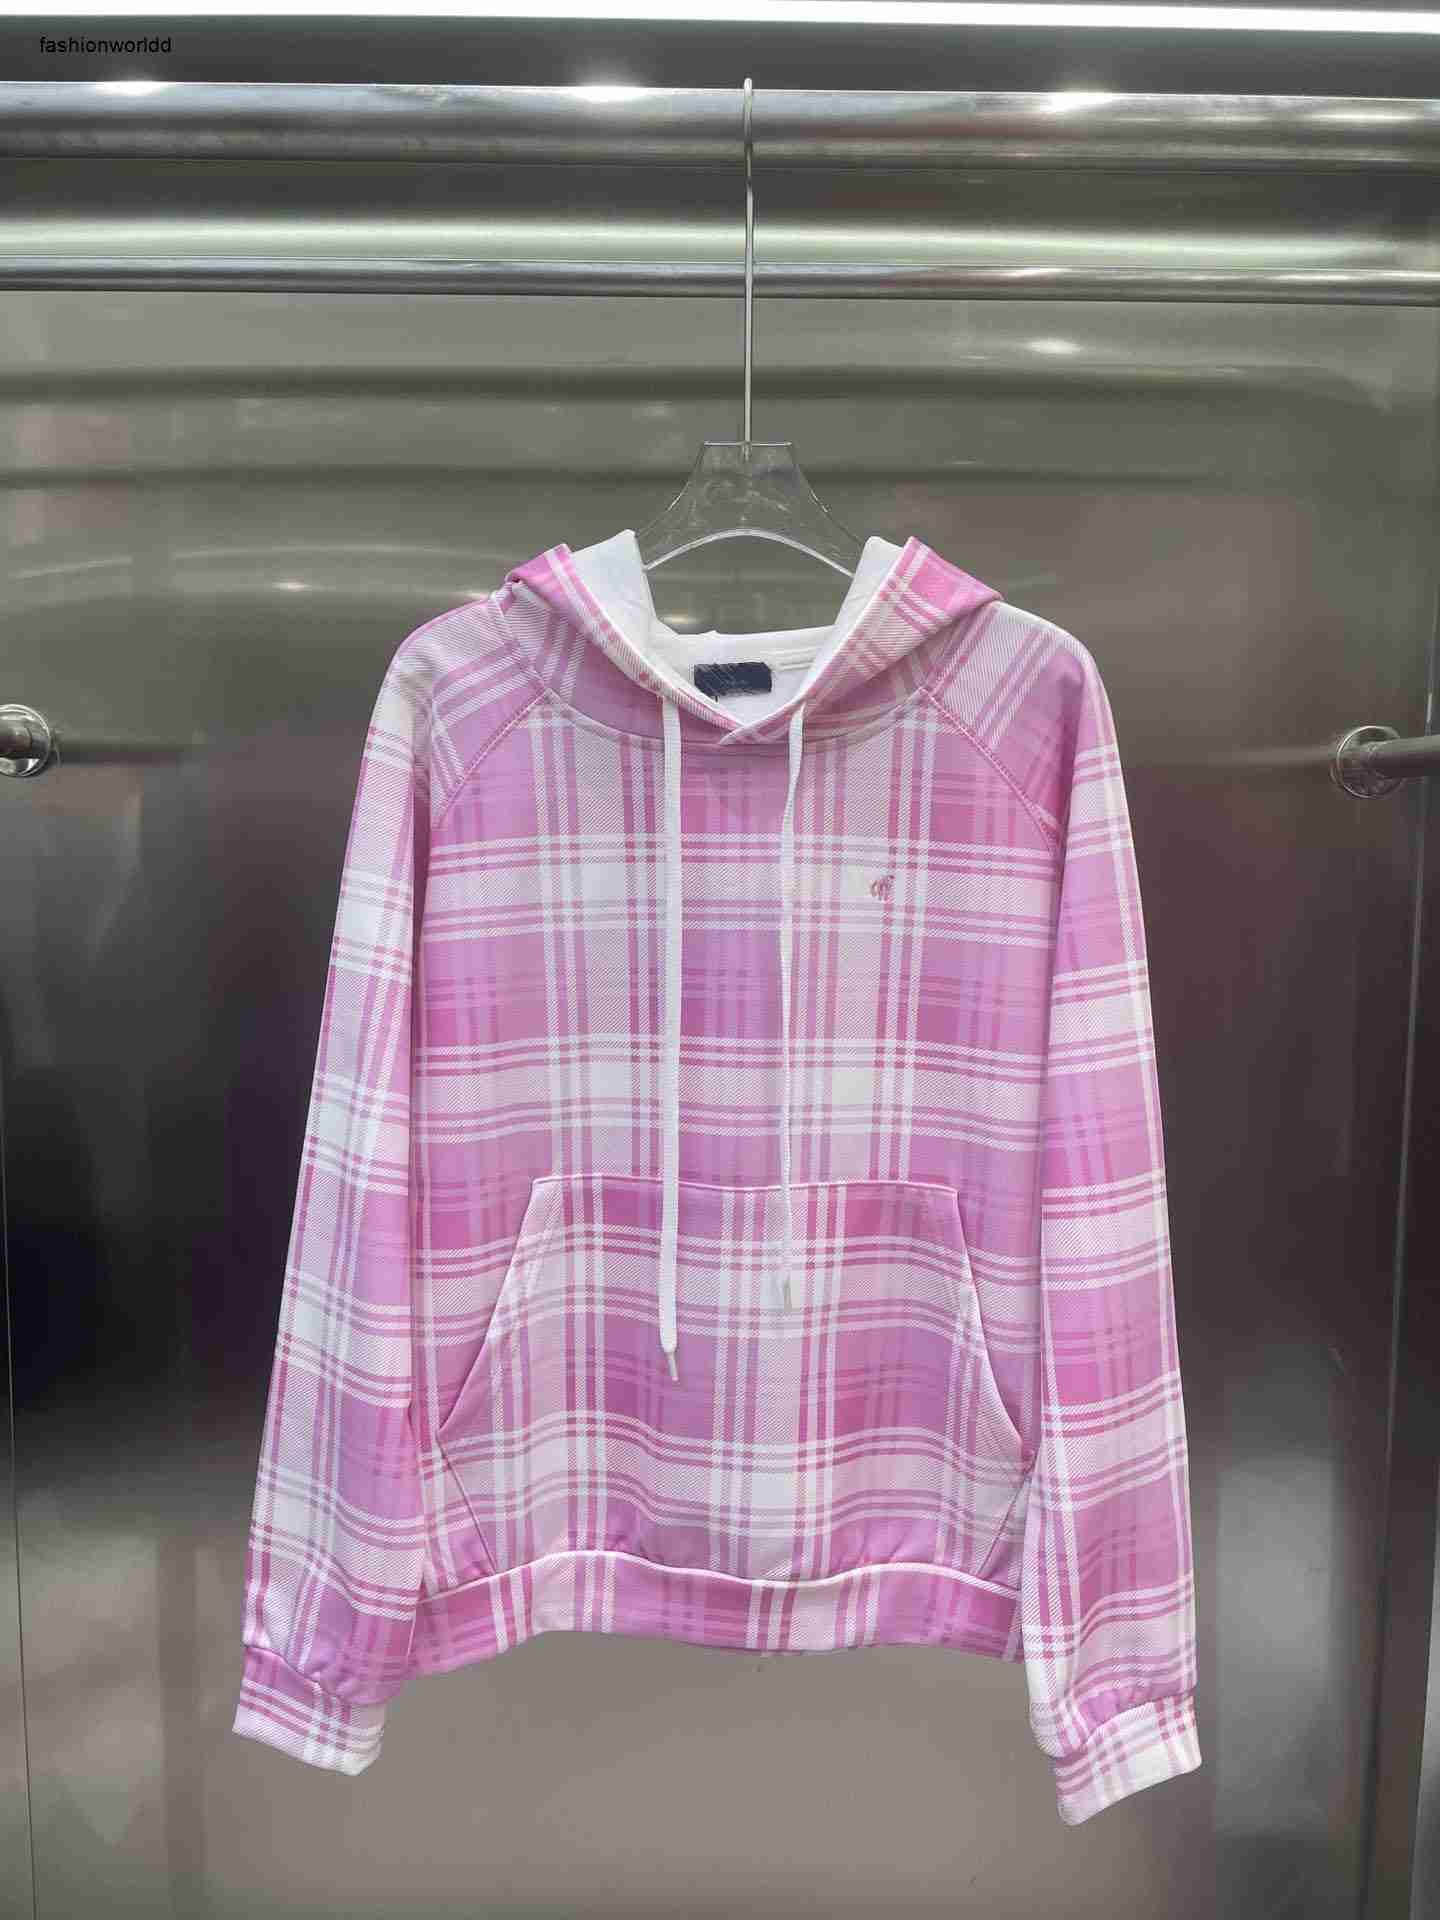 #1-Pink hoodie